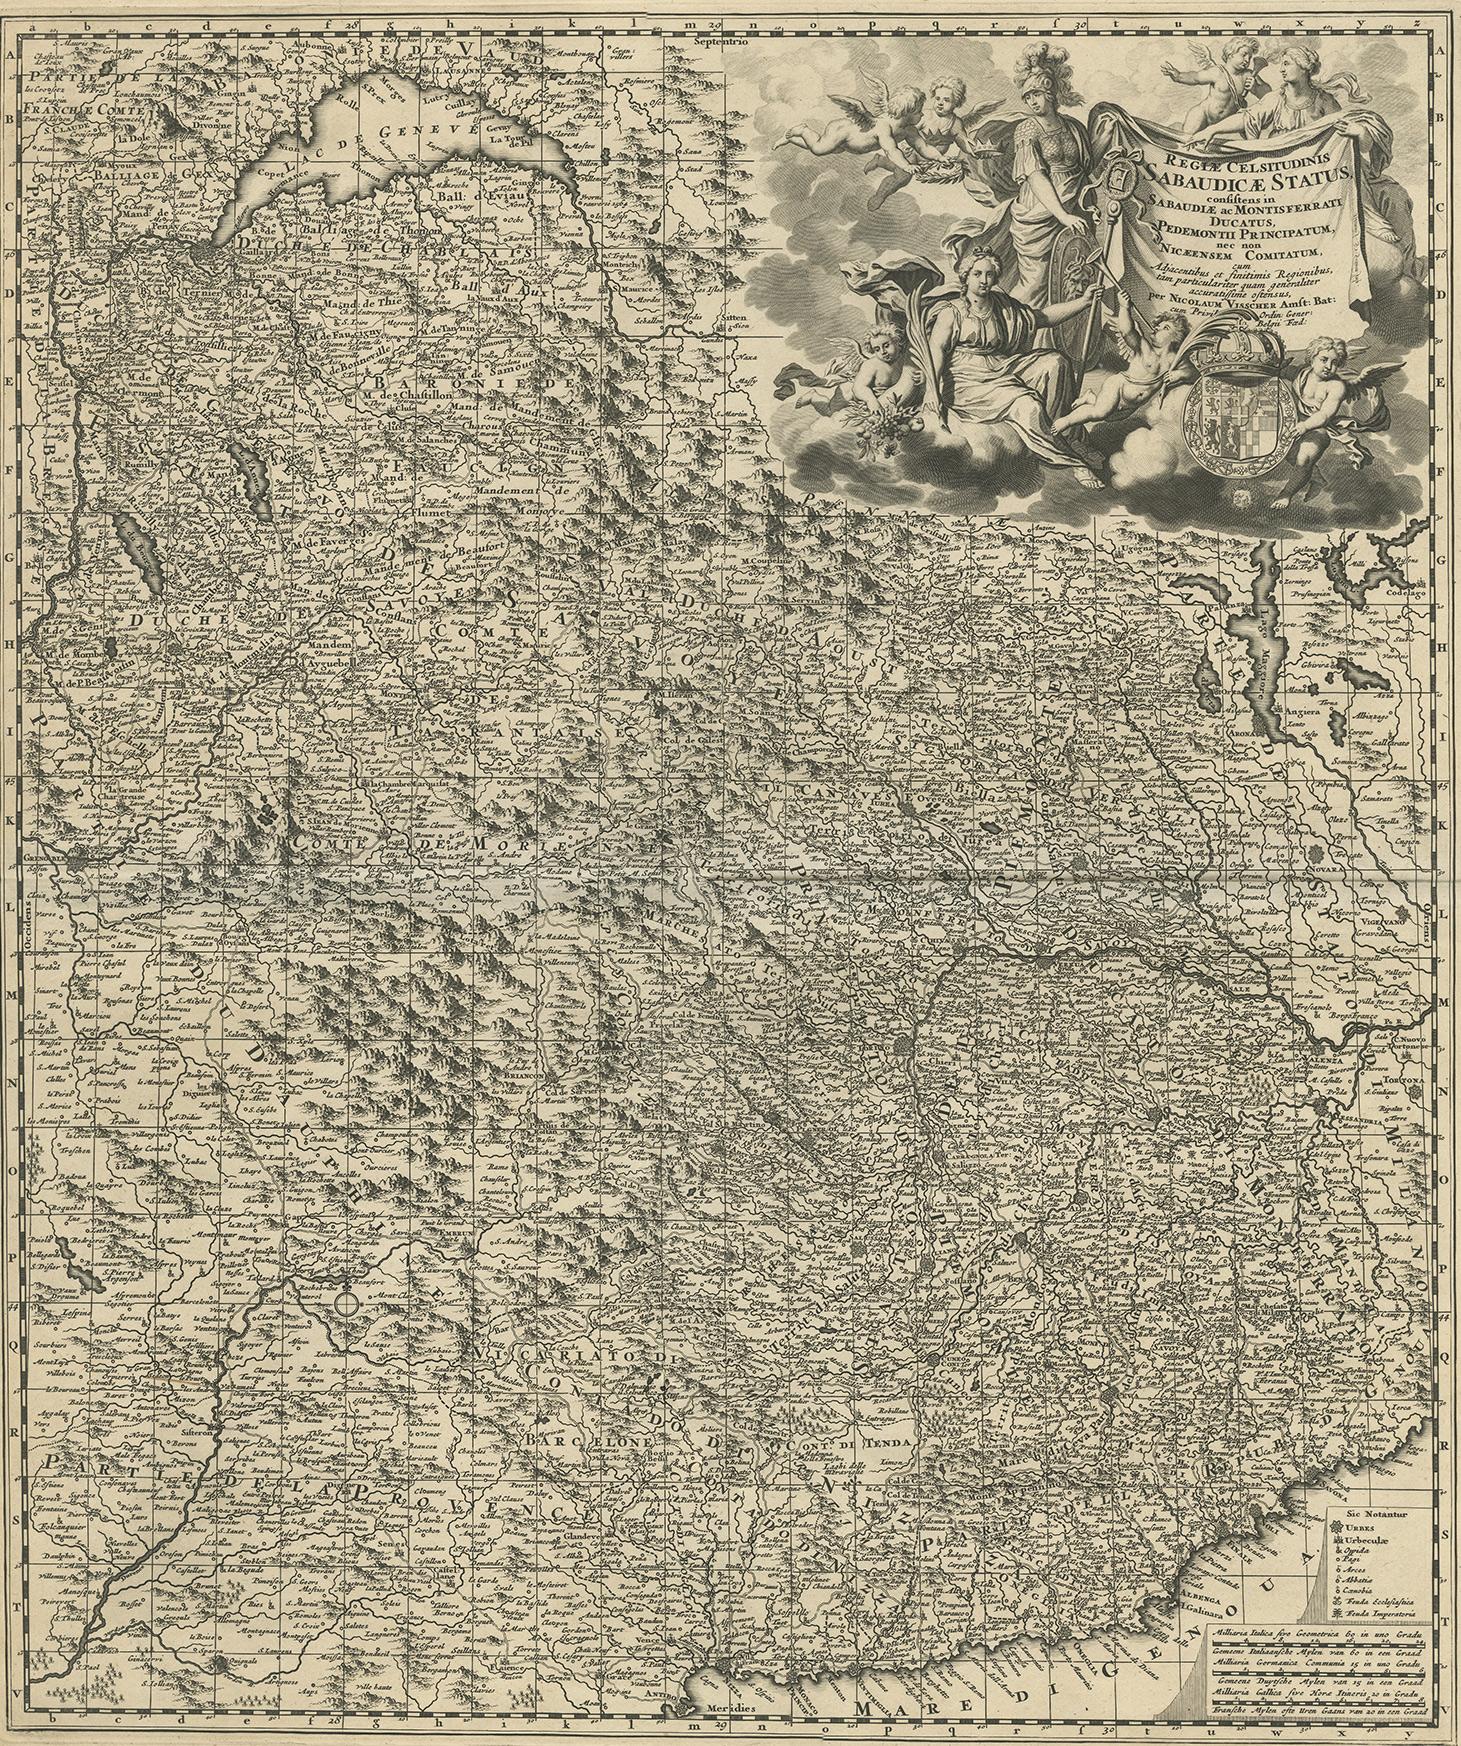 Antique map titled 'Regiae Celsitudinis Sabaudicae Status consistens in Sabaudiae ac Montisferrati Ducatus, Pedemontii Principatum (..). This map originates from 'Atlas Minor Sive Geographia Compendosia (..)', Amsterdam (1683-1696).